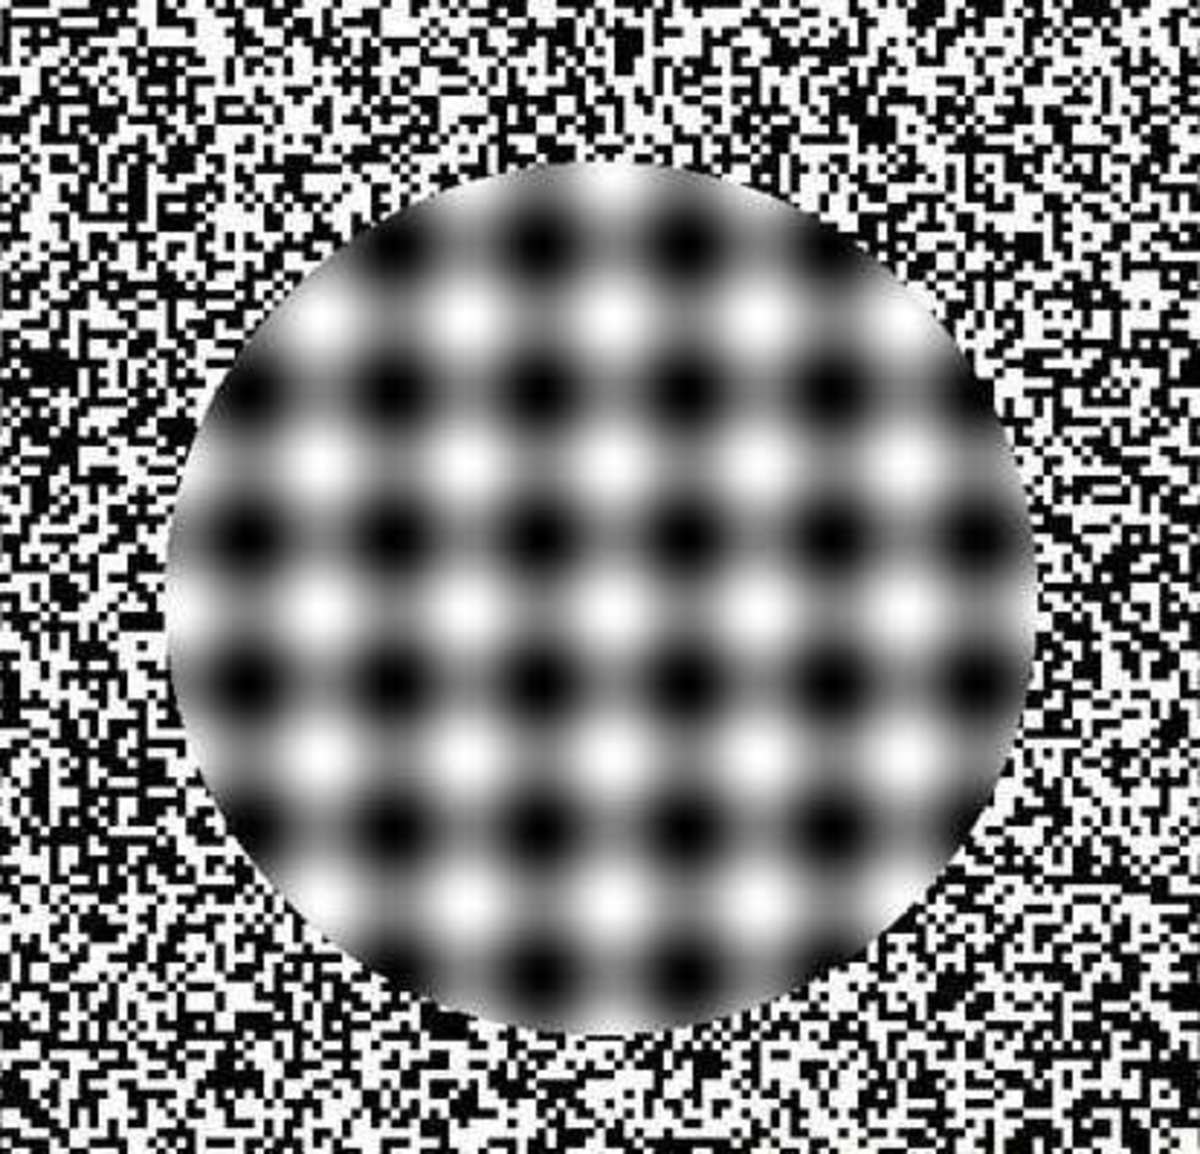 eye-tomfoolery-some-fun-optical-illusions